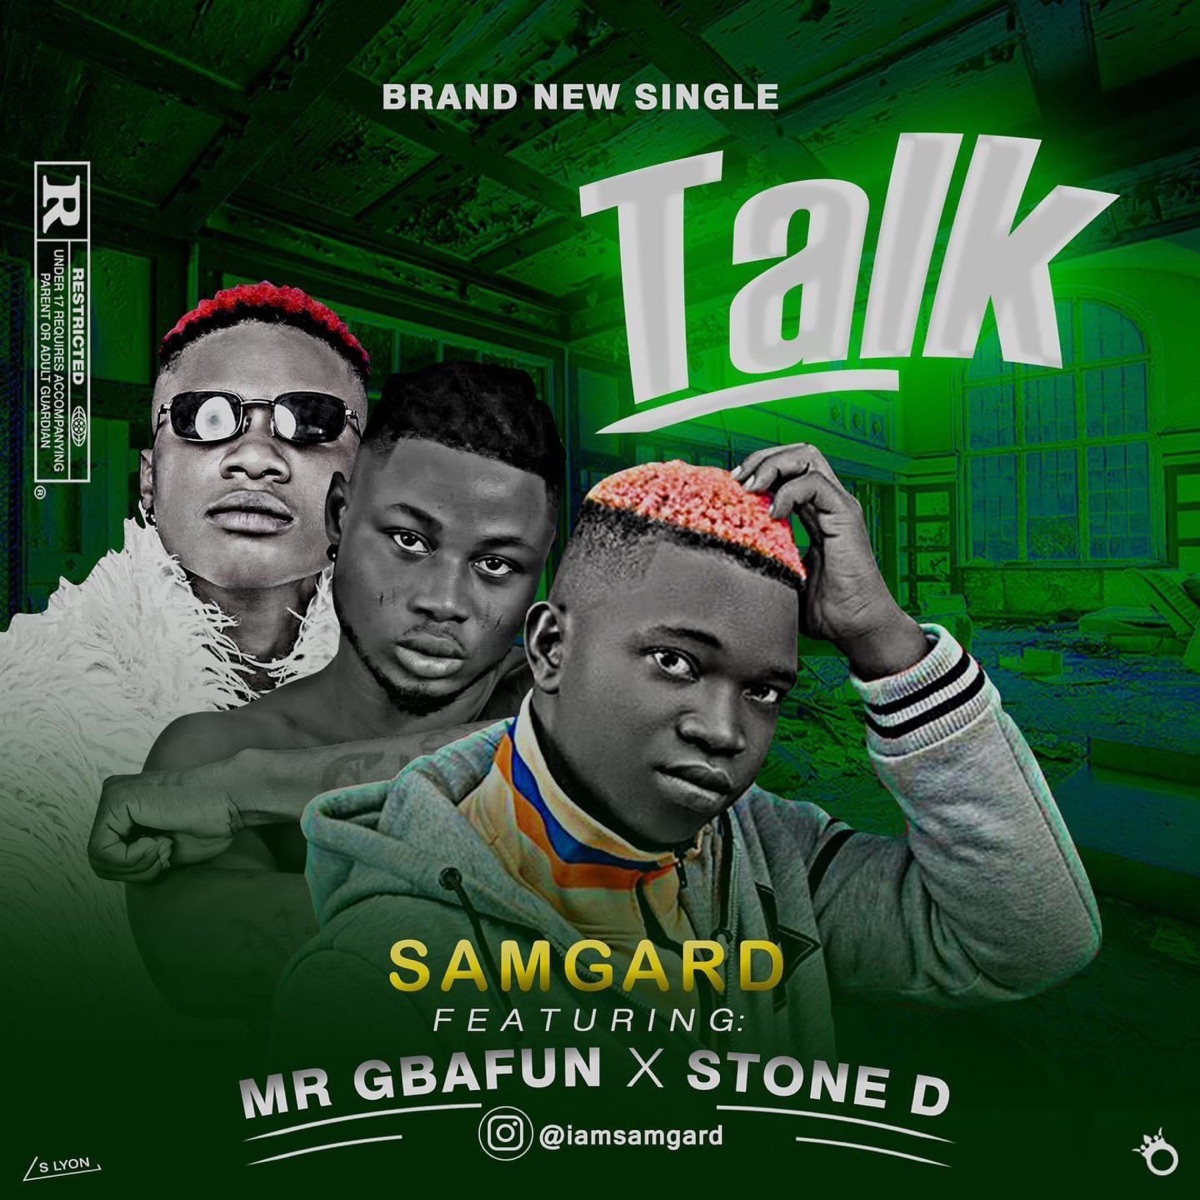 Samgard - TALK (feat. mr gbafun & stone d) - Single